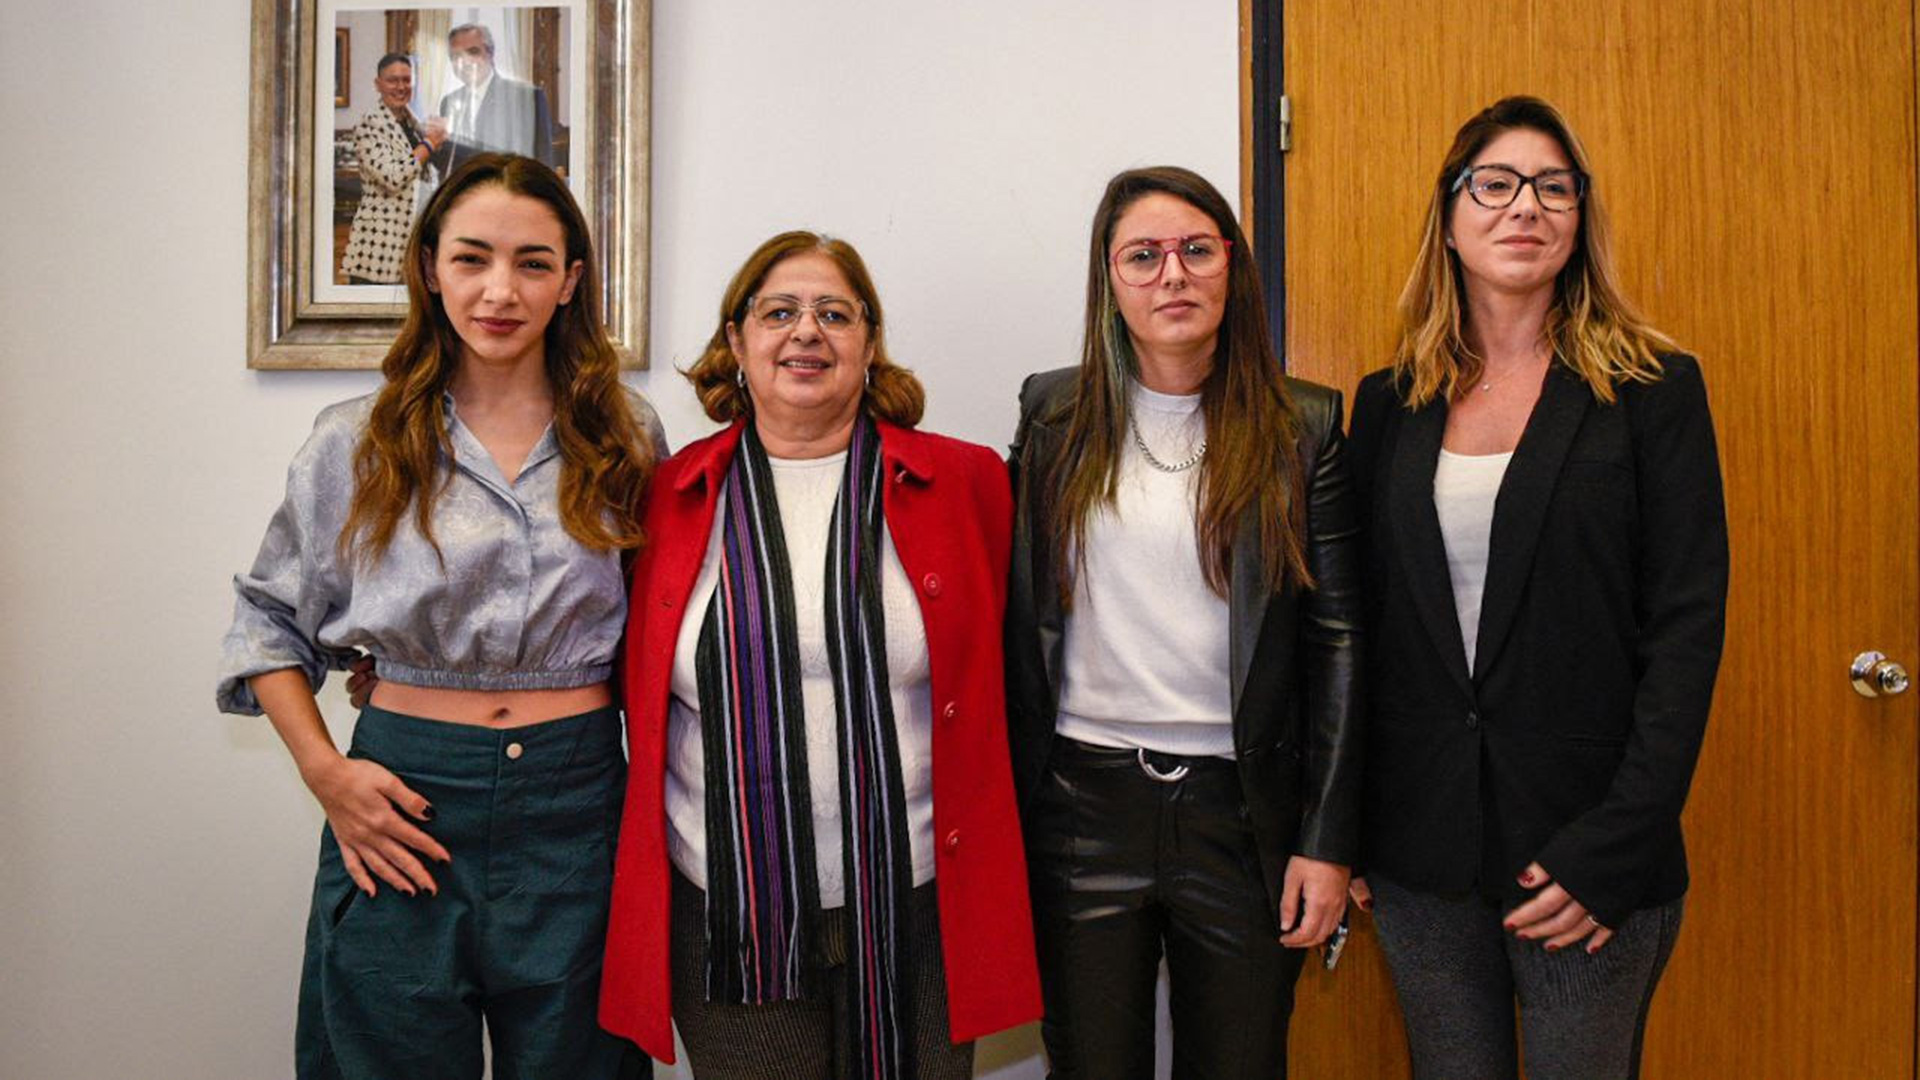 El jueves 18 de mayo, la ministra de Asuntos de la Mujer de Brasil, Cida Gonçalves se reunió con Thelma Fardín, Carla Junqueira y Ayelén Mazzina y reclamó que la justicia de Brasil tenga perspectiva de género